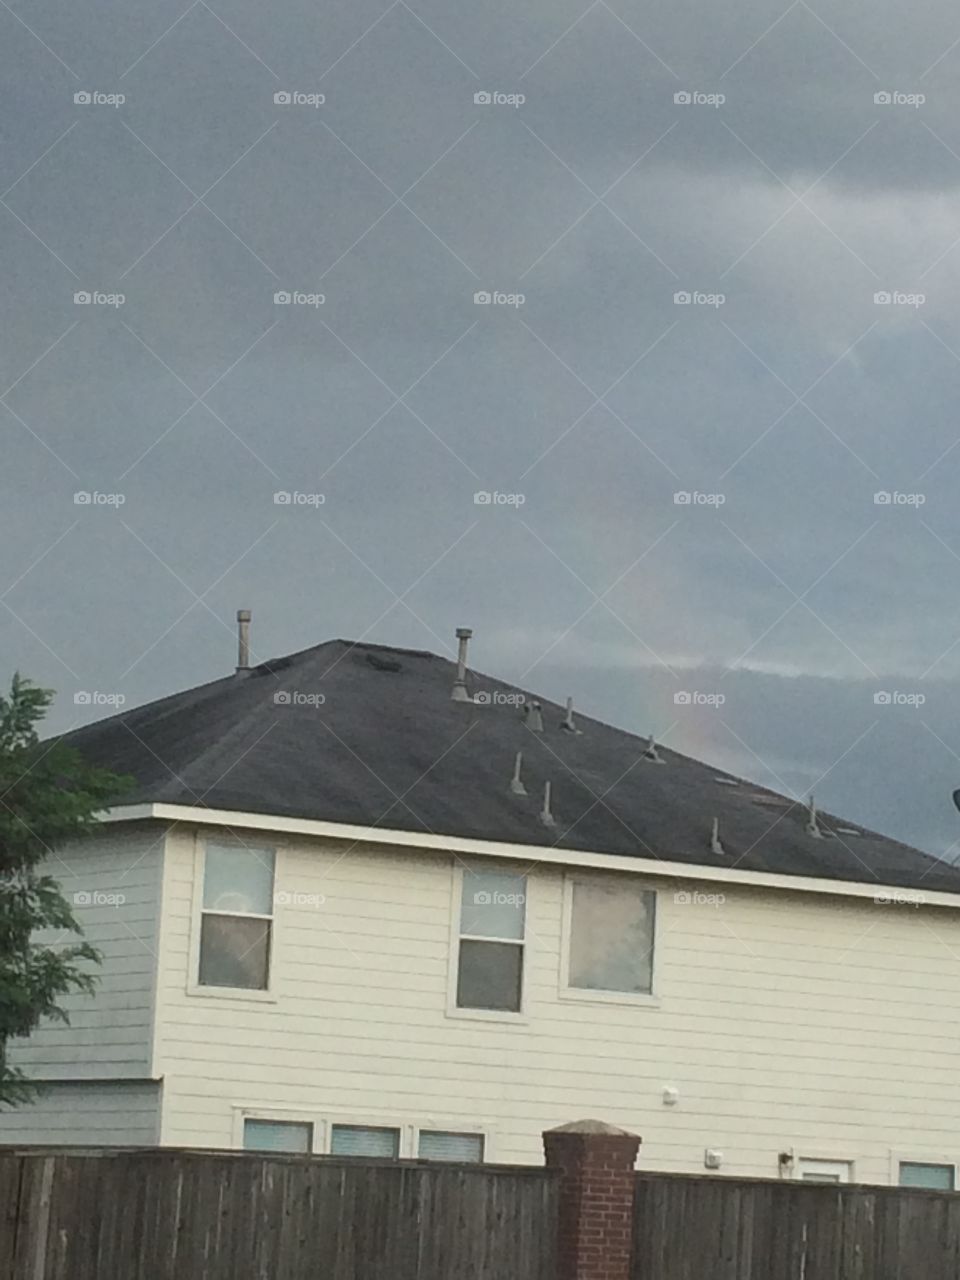 Rainbow. Spotted a rainbow